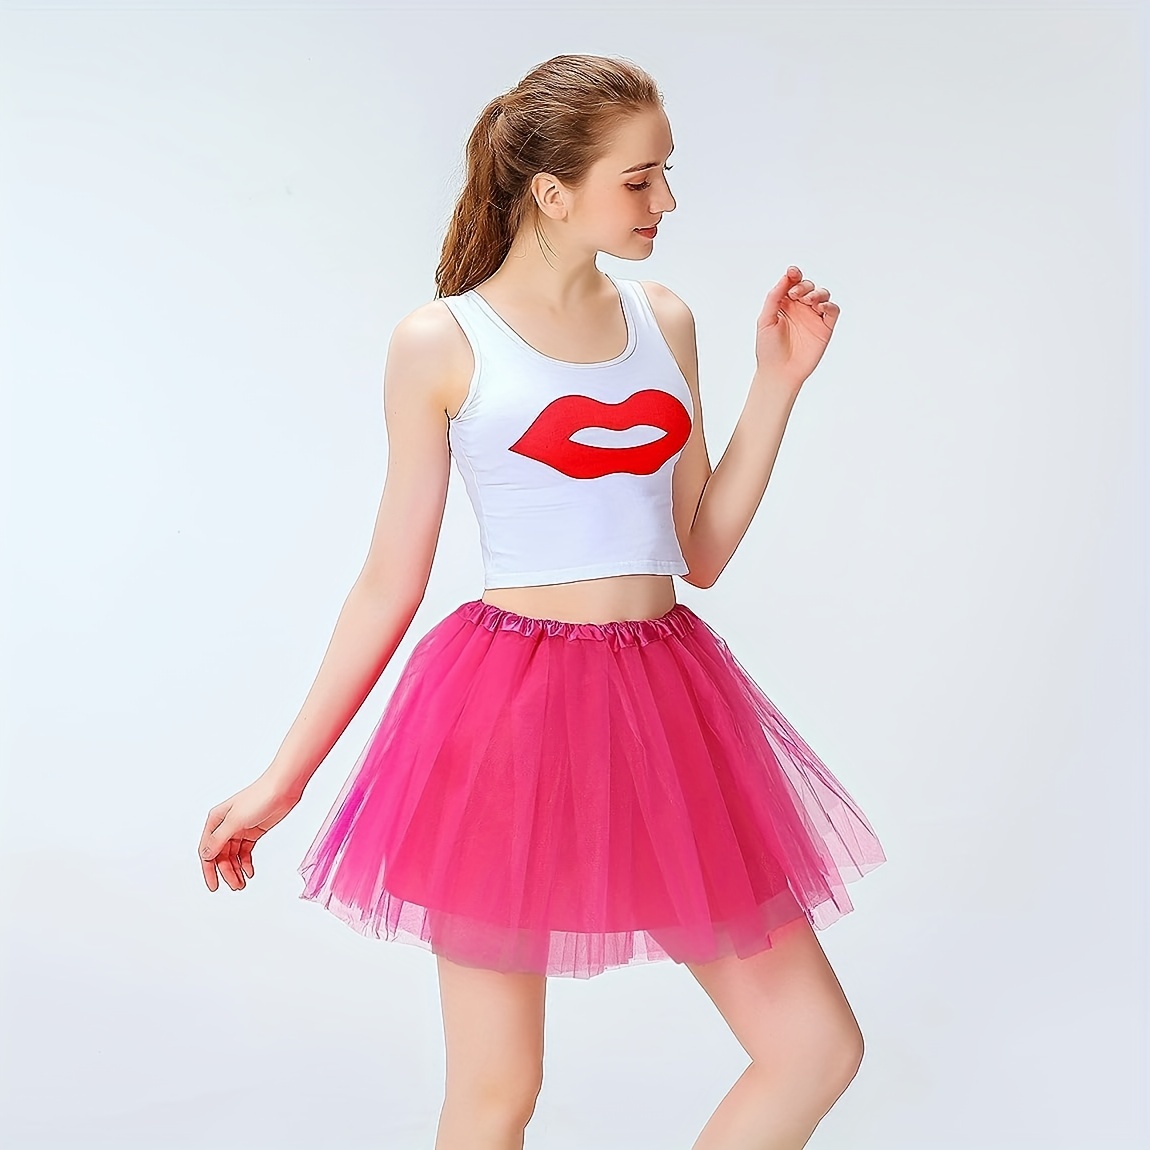 Paquete de 3 faldas de tutú para mujeres adolescentes y adultos 5 capas  faldas de tutú de tul clásicas para mujeres disfraz de ballet para correr